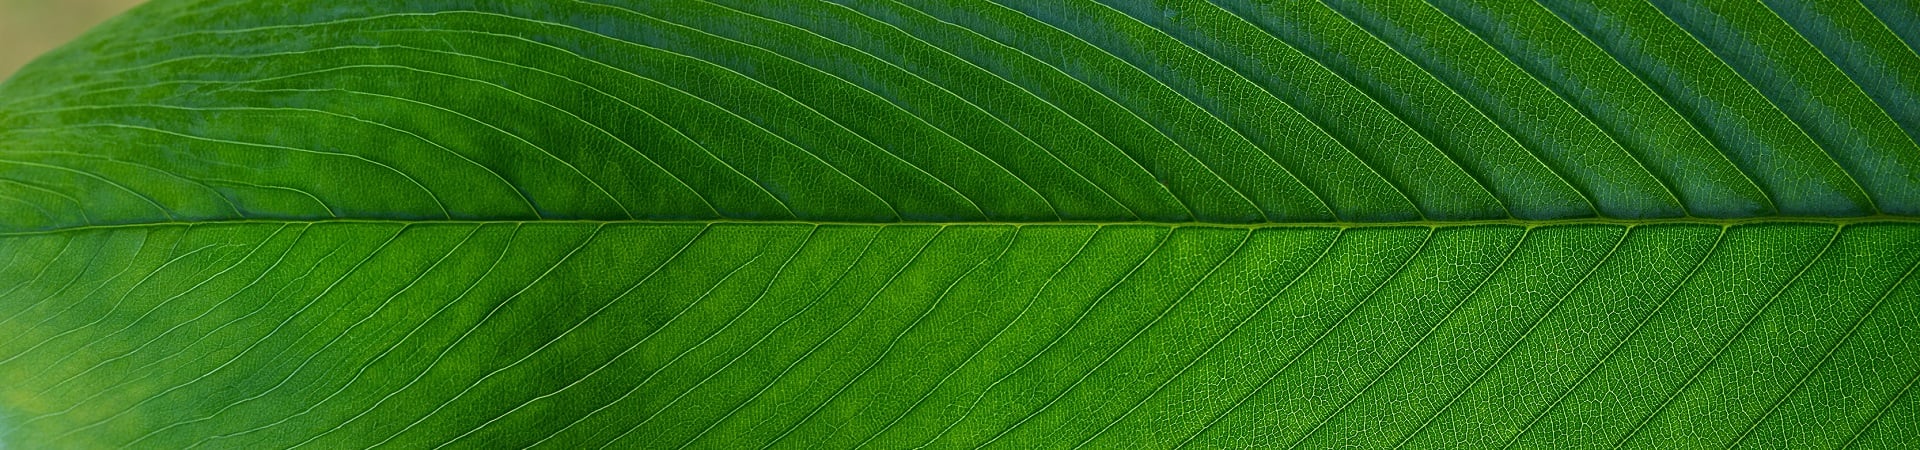 bnr-green-leaf-close-up-03